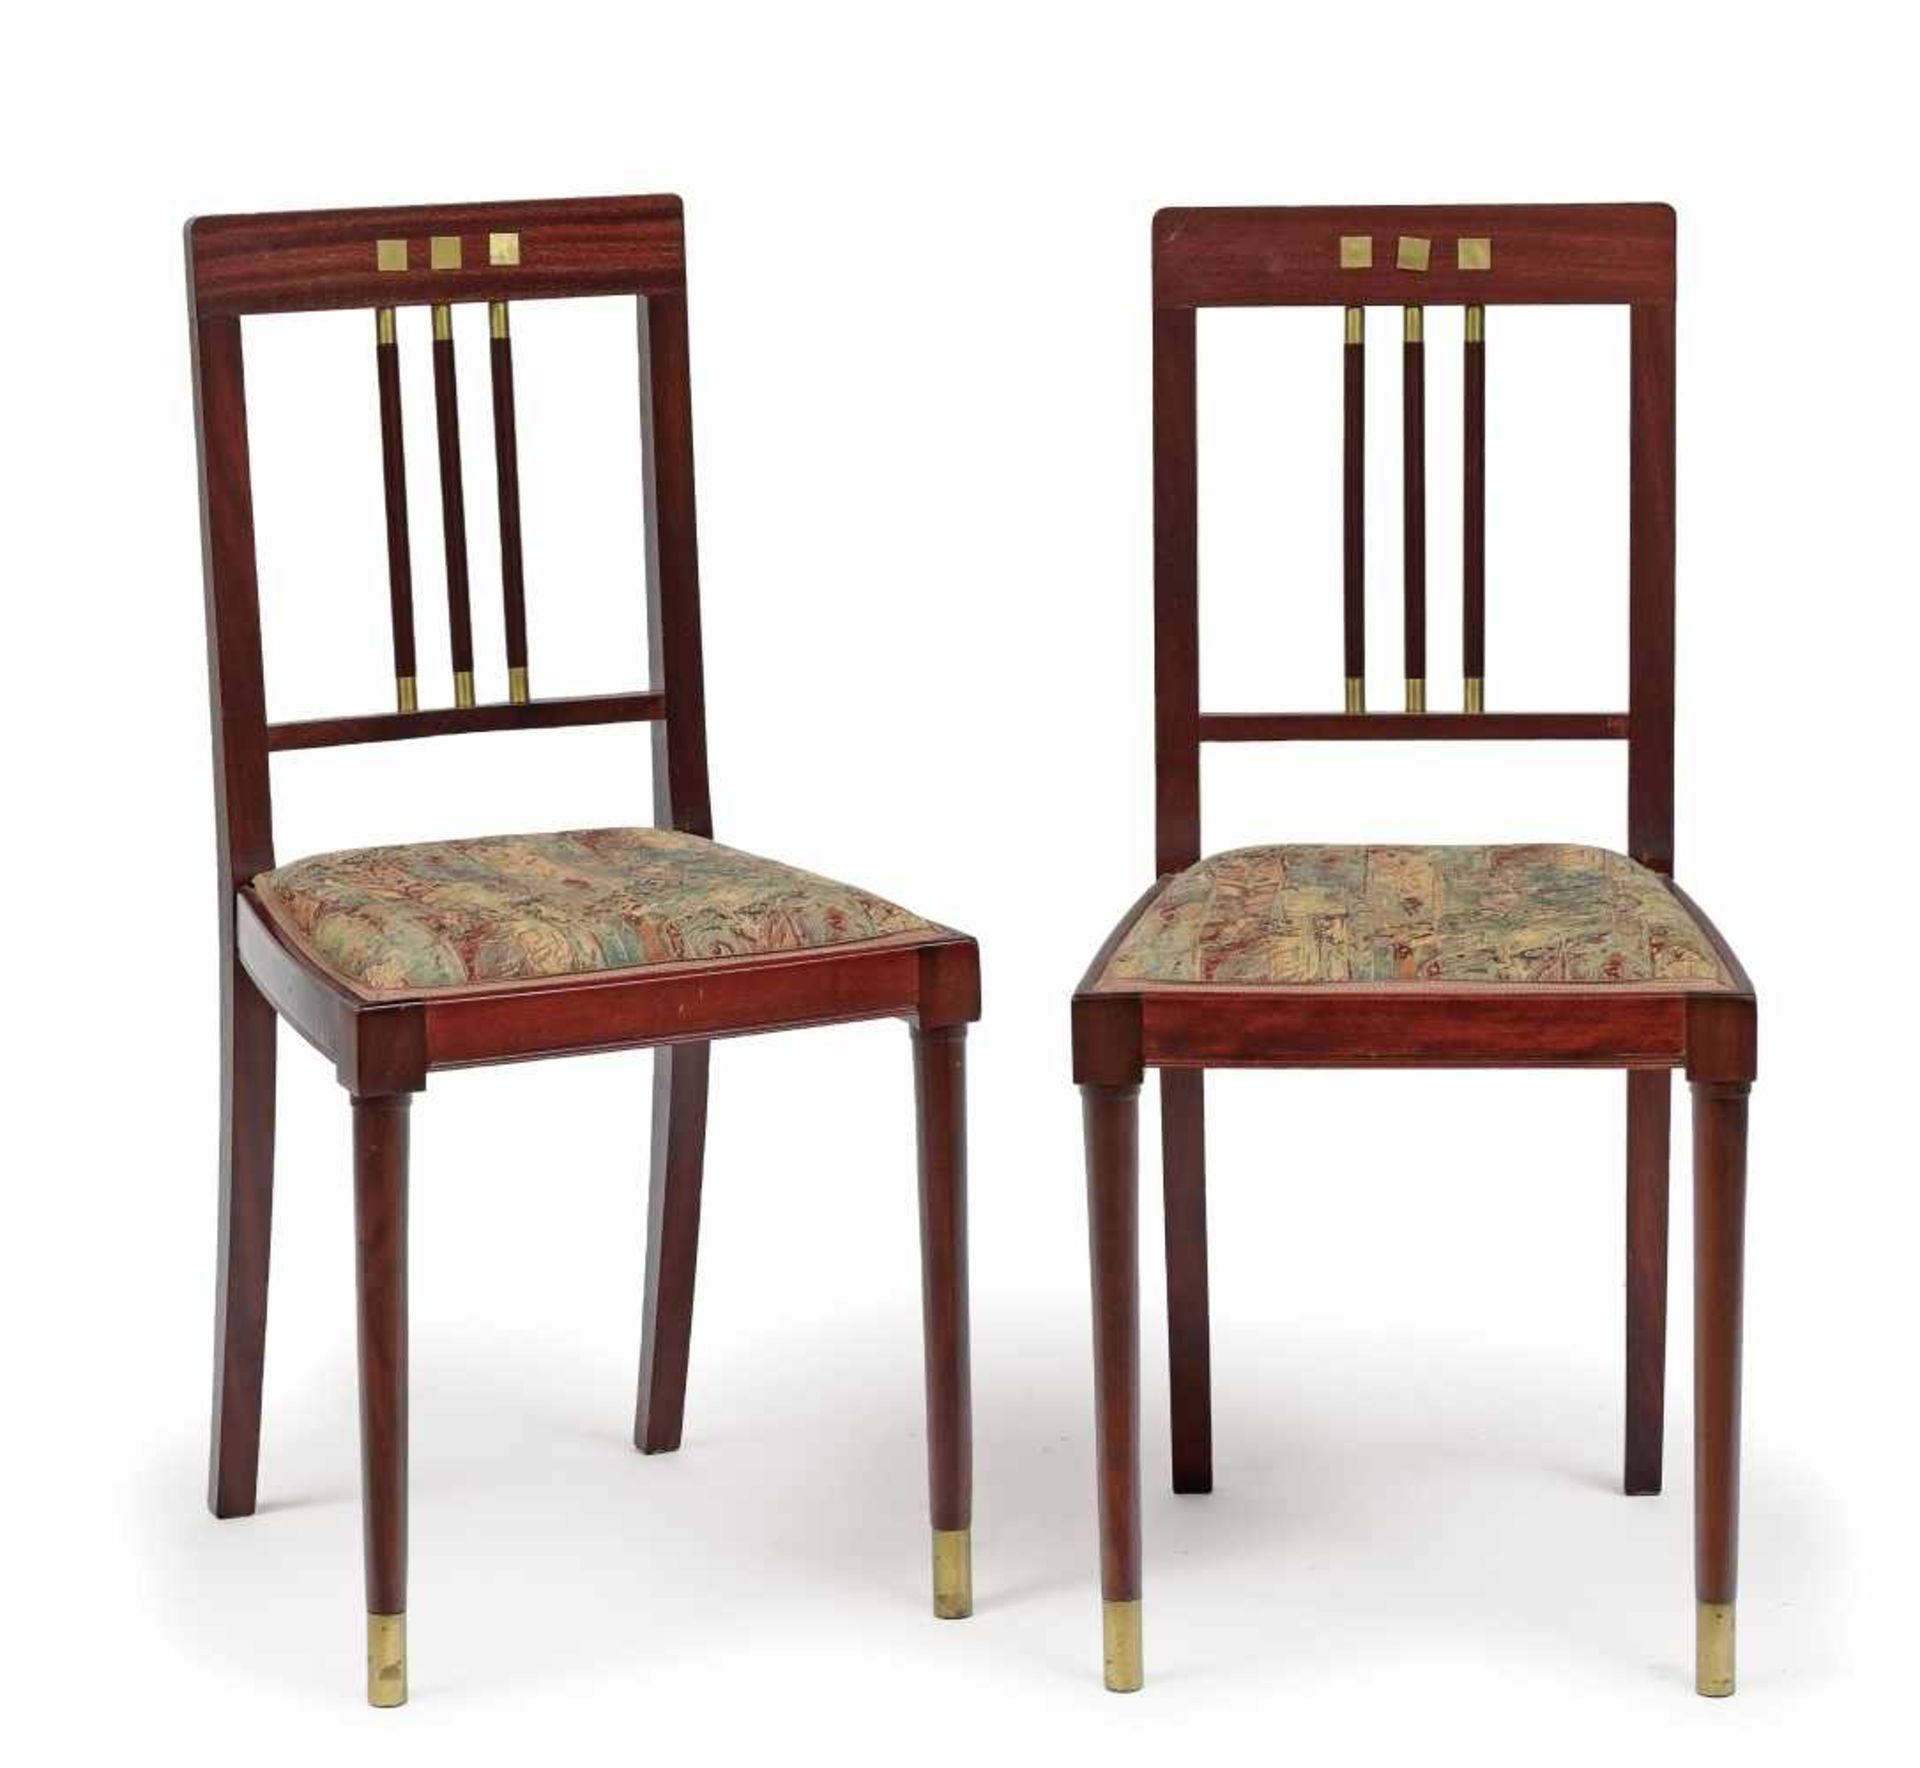 Ein Paar Stühle (zu einem Musikzimmer gehörig)Darmstadt, Joseph Maria Olbrich, um 1900 Mahagoni.